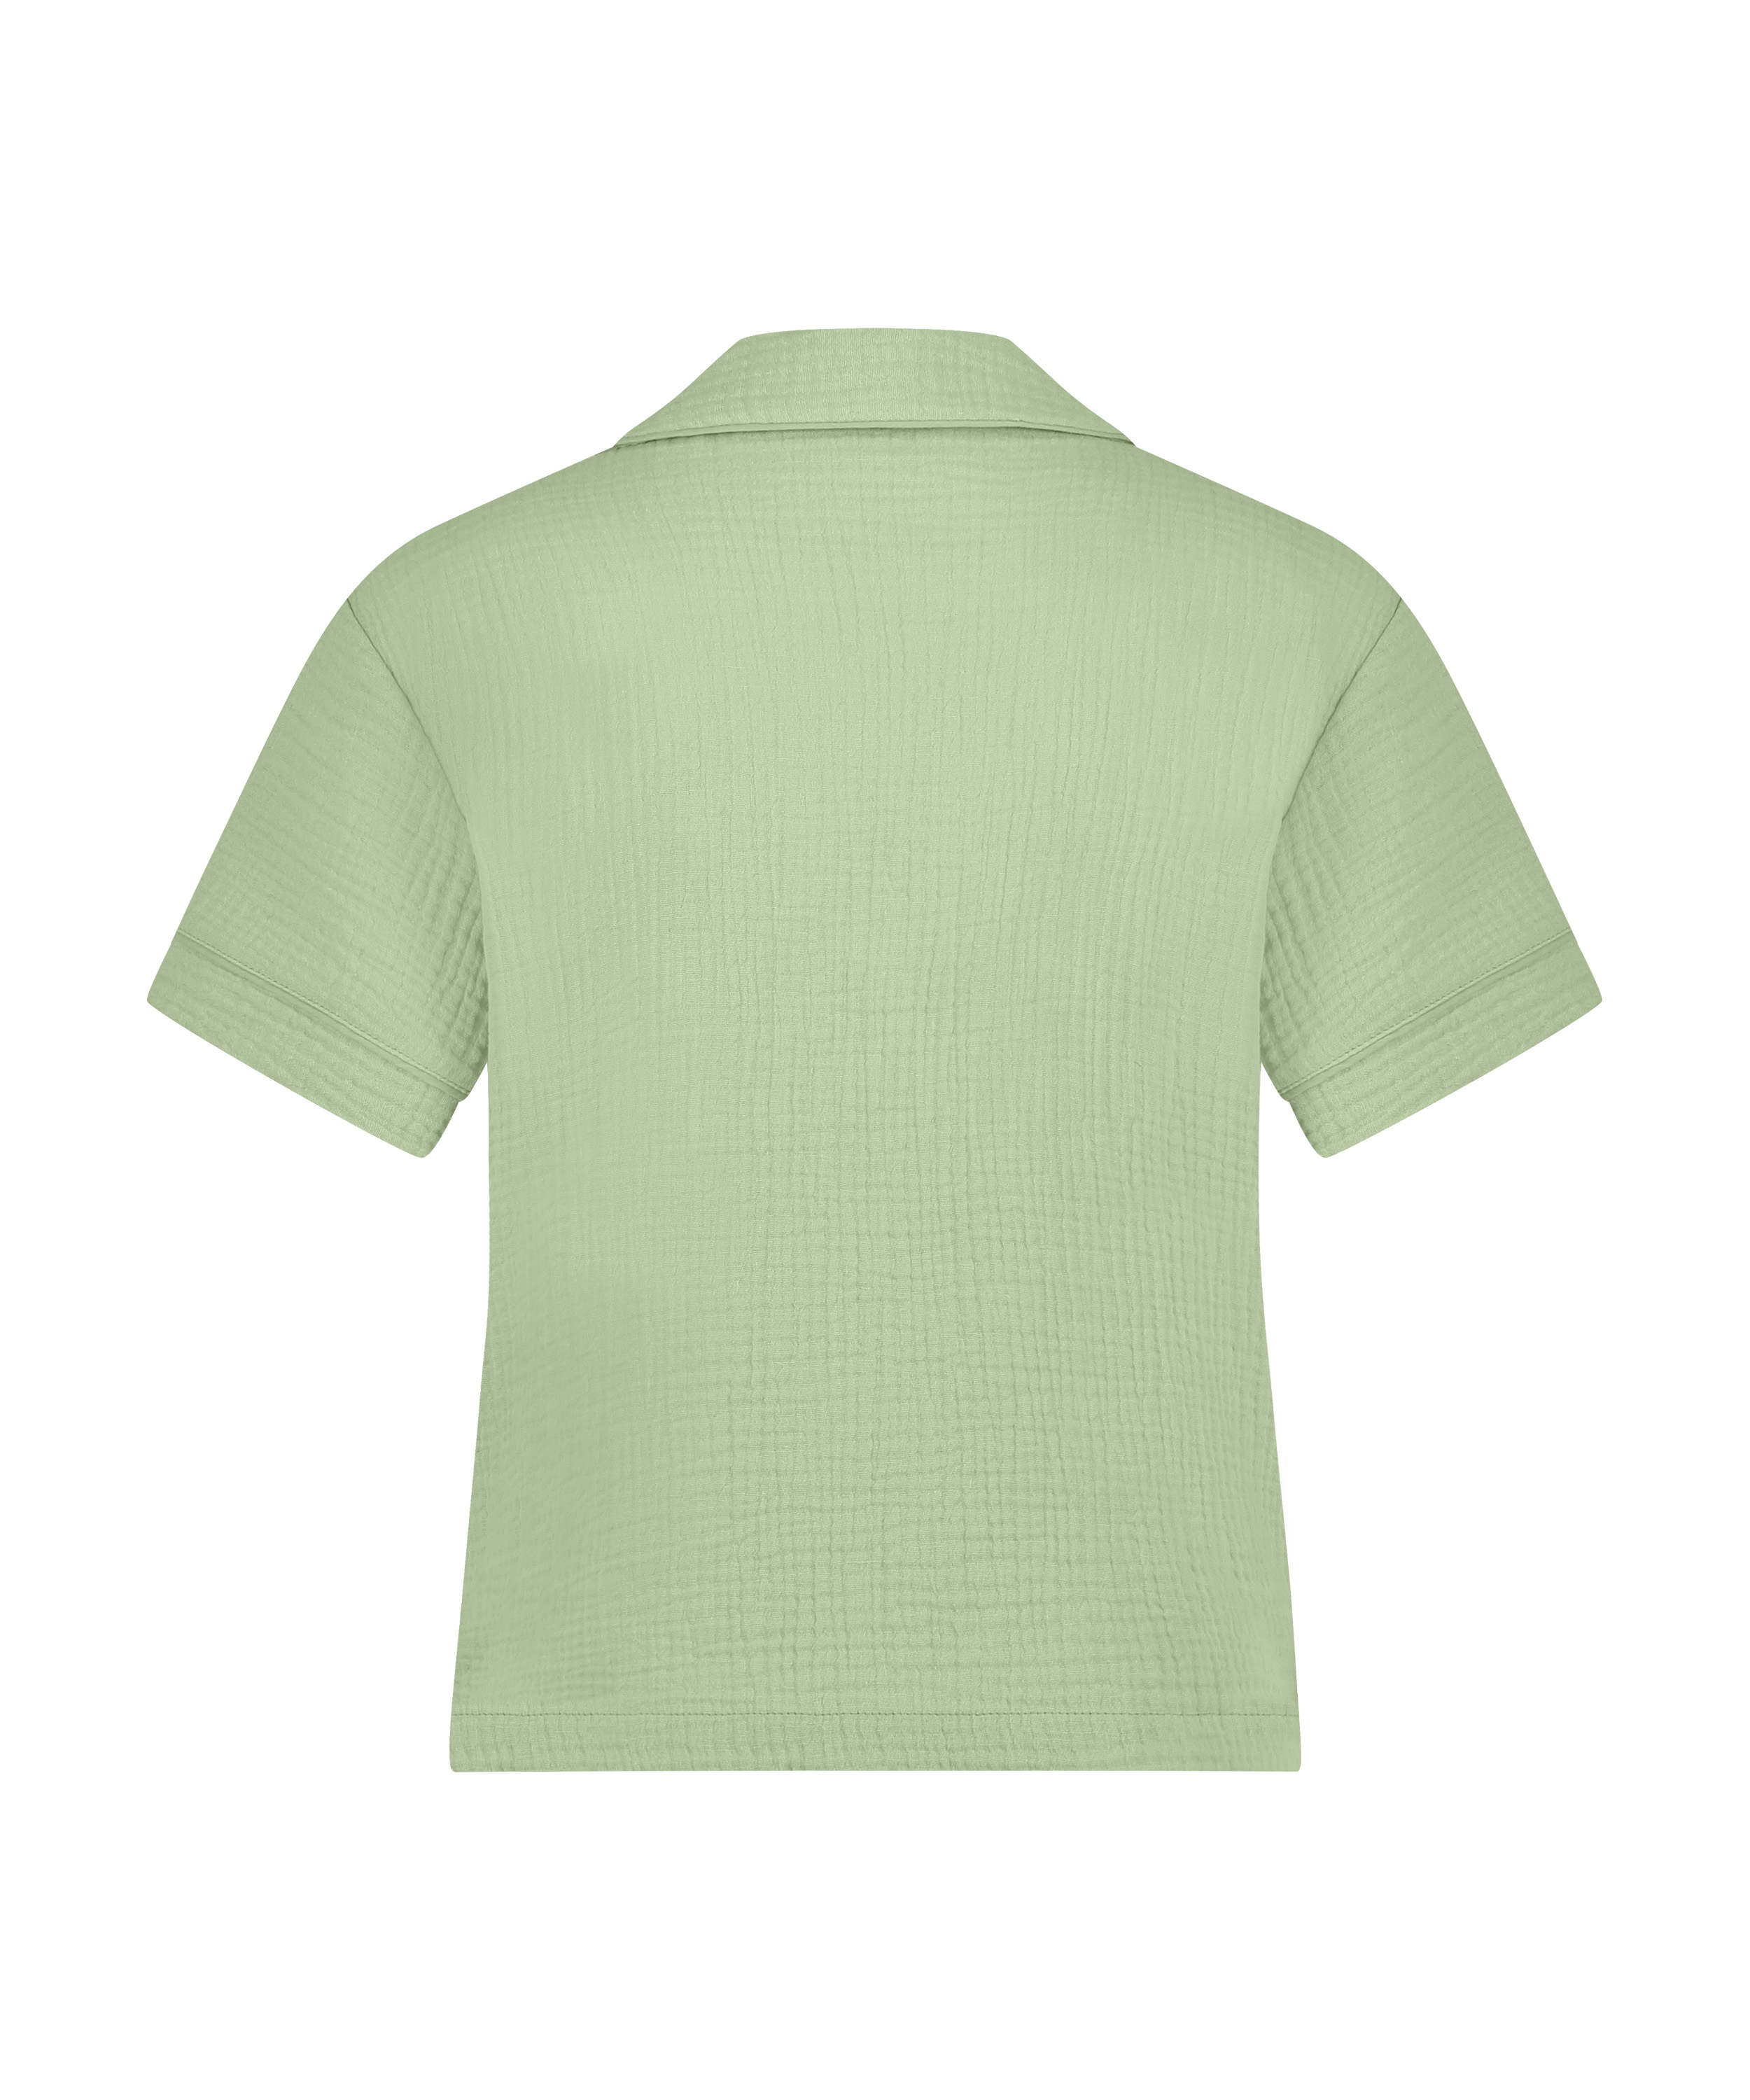 Springbreakers Pyjama Top, Green, main